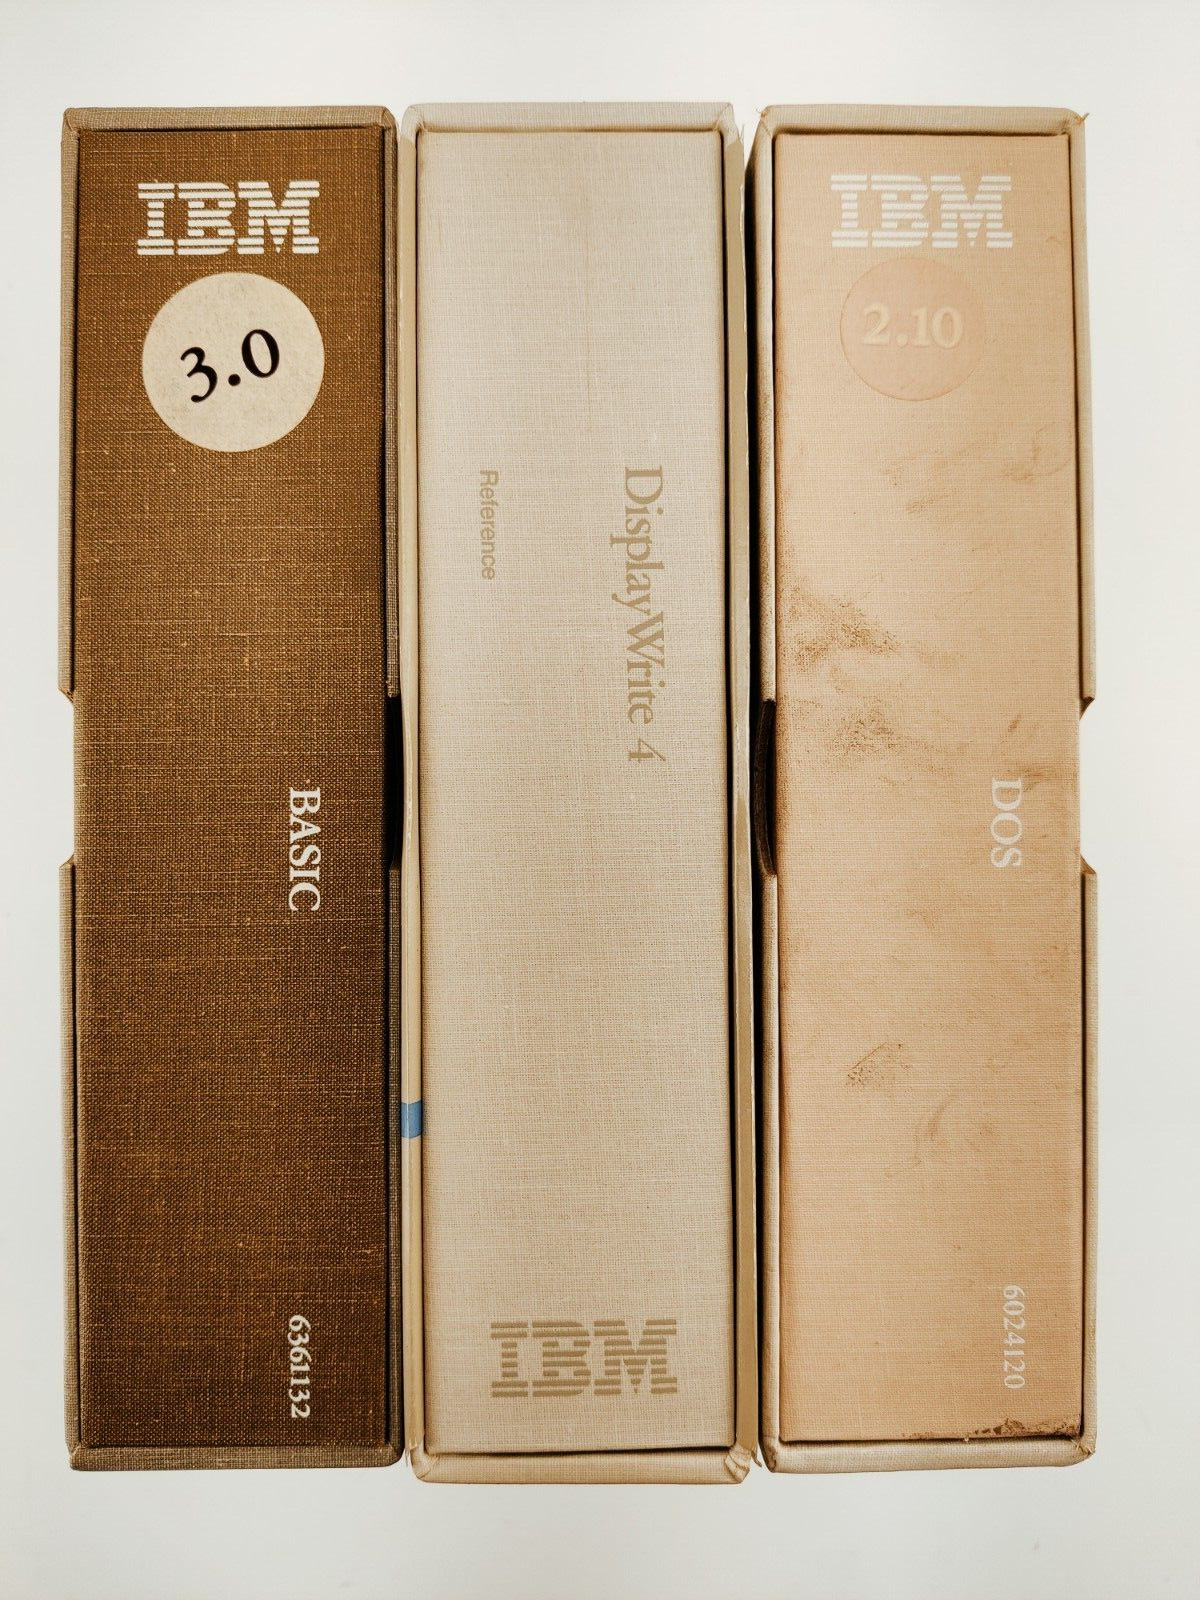 Lot of 3 IBM Binder Manuals Basic, DOS, DisplayWrite 4 Vintage 1980s